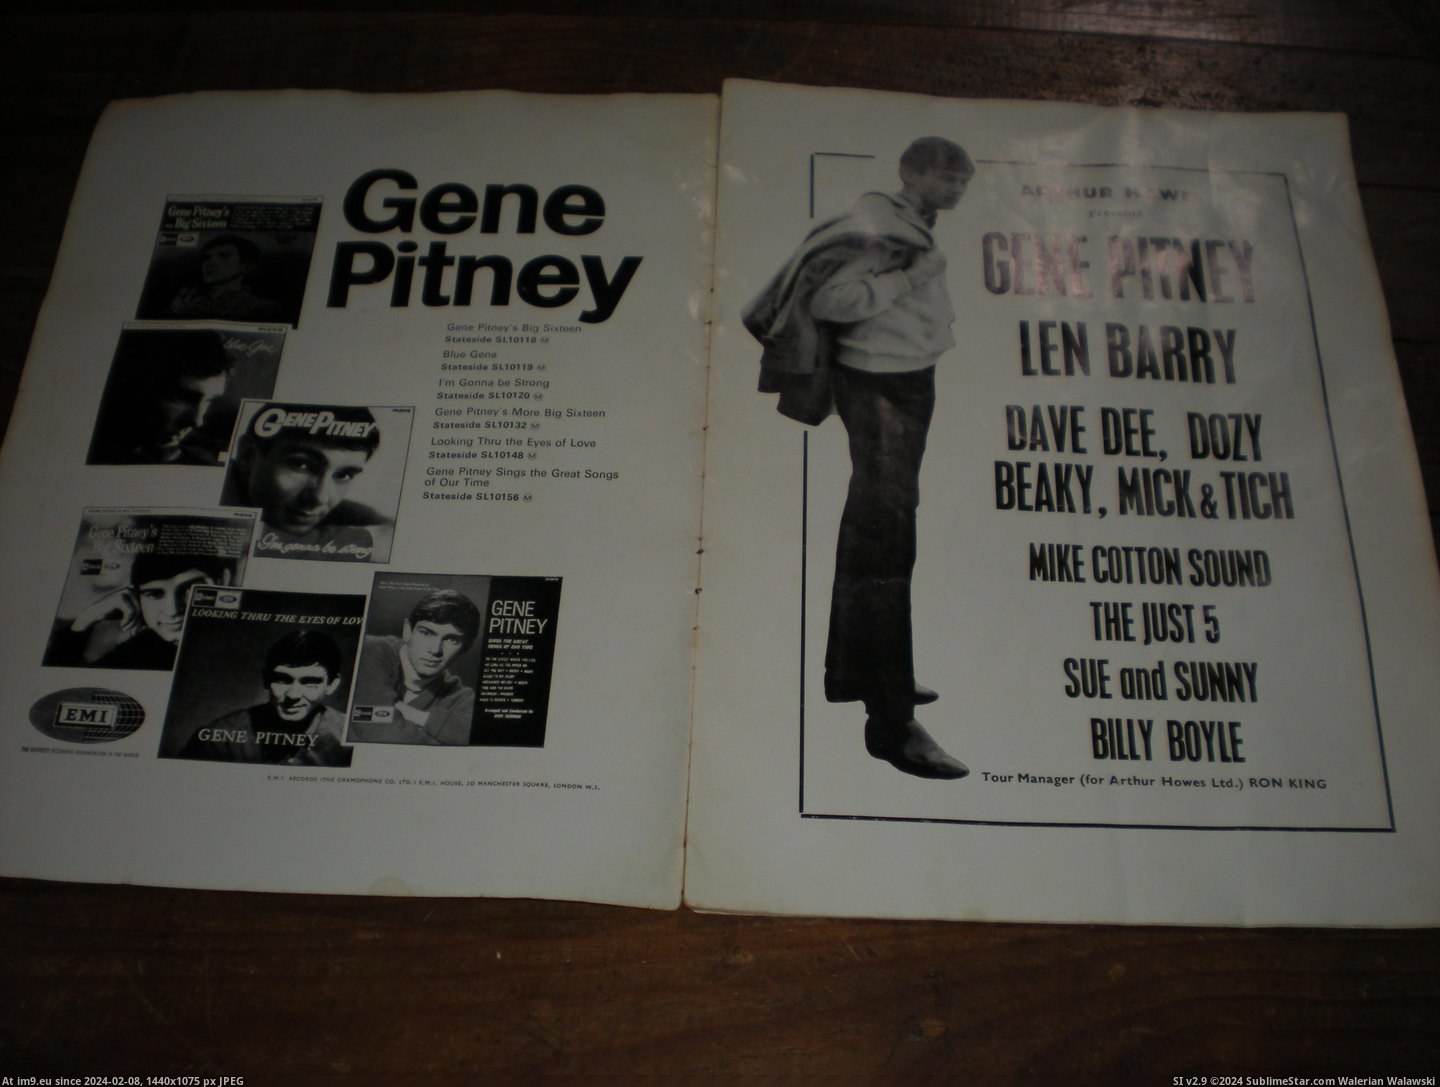 #Gene #Pitney #Prog Gene Pitney prog 3 Pic. (Obraz z album new 1))